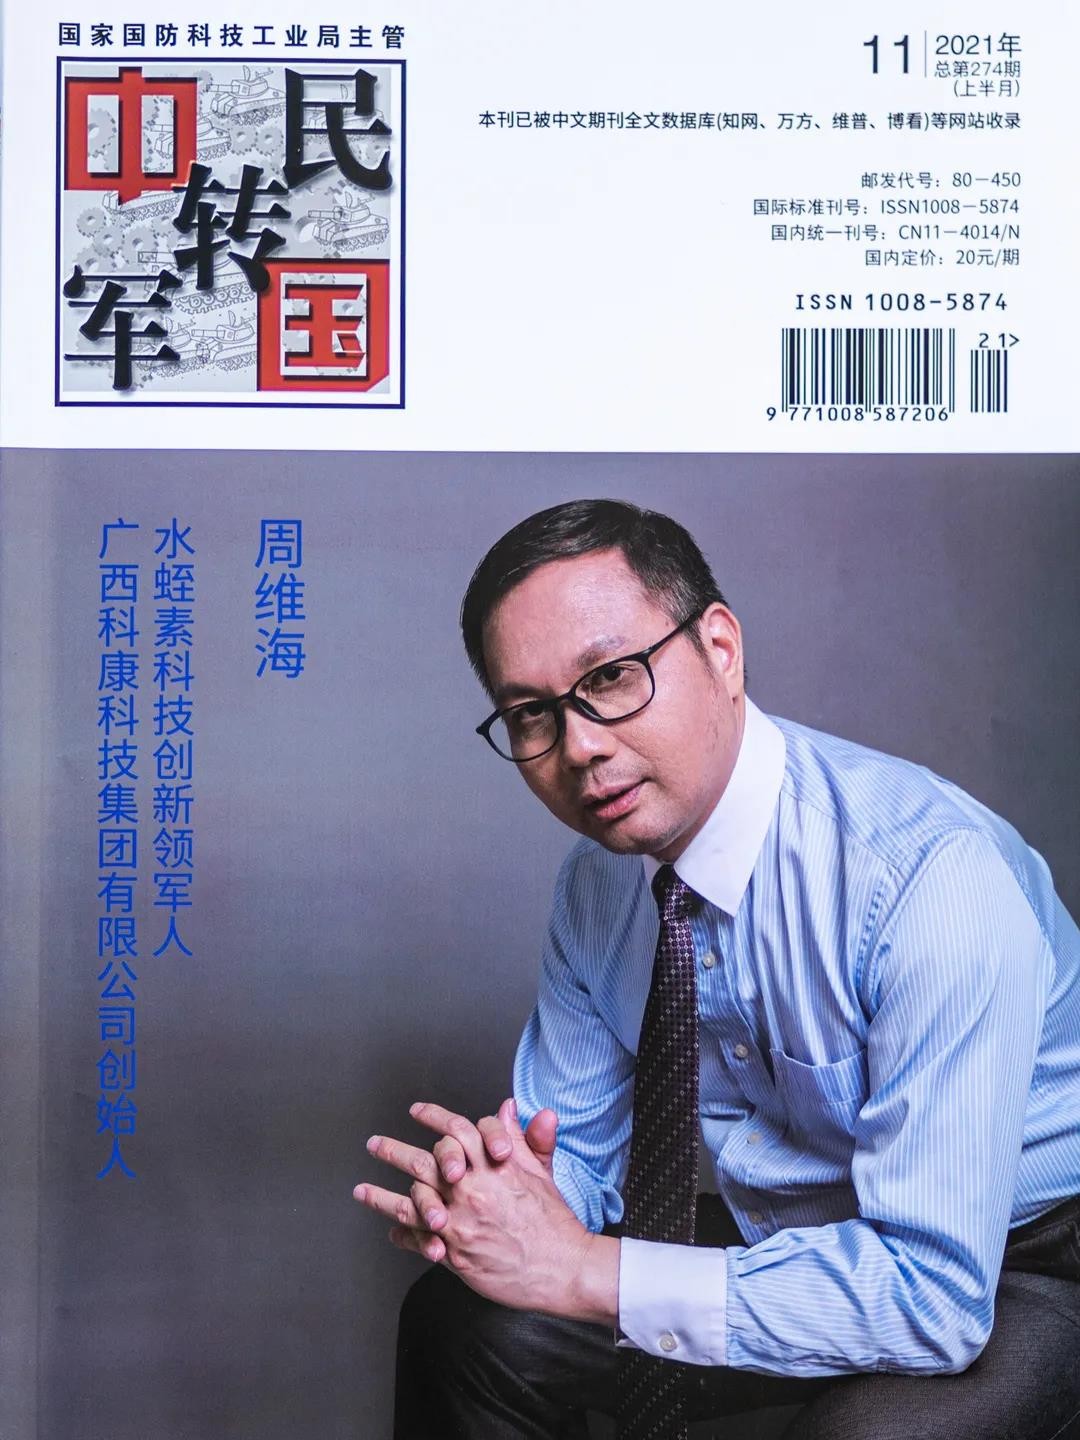 科康集团周维海荣登《中国军转民》杂志 被誉为中国天然水蛭素之父